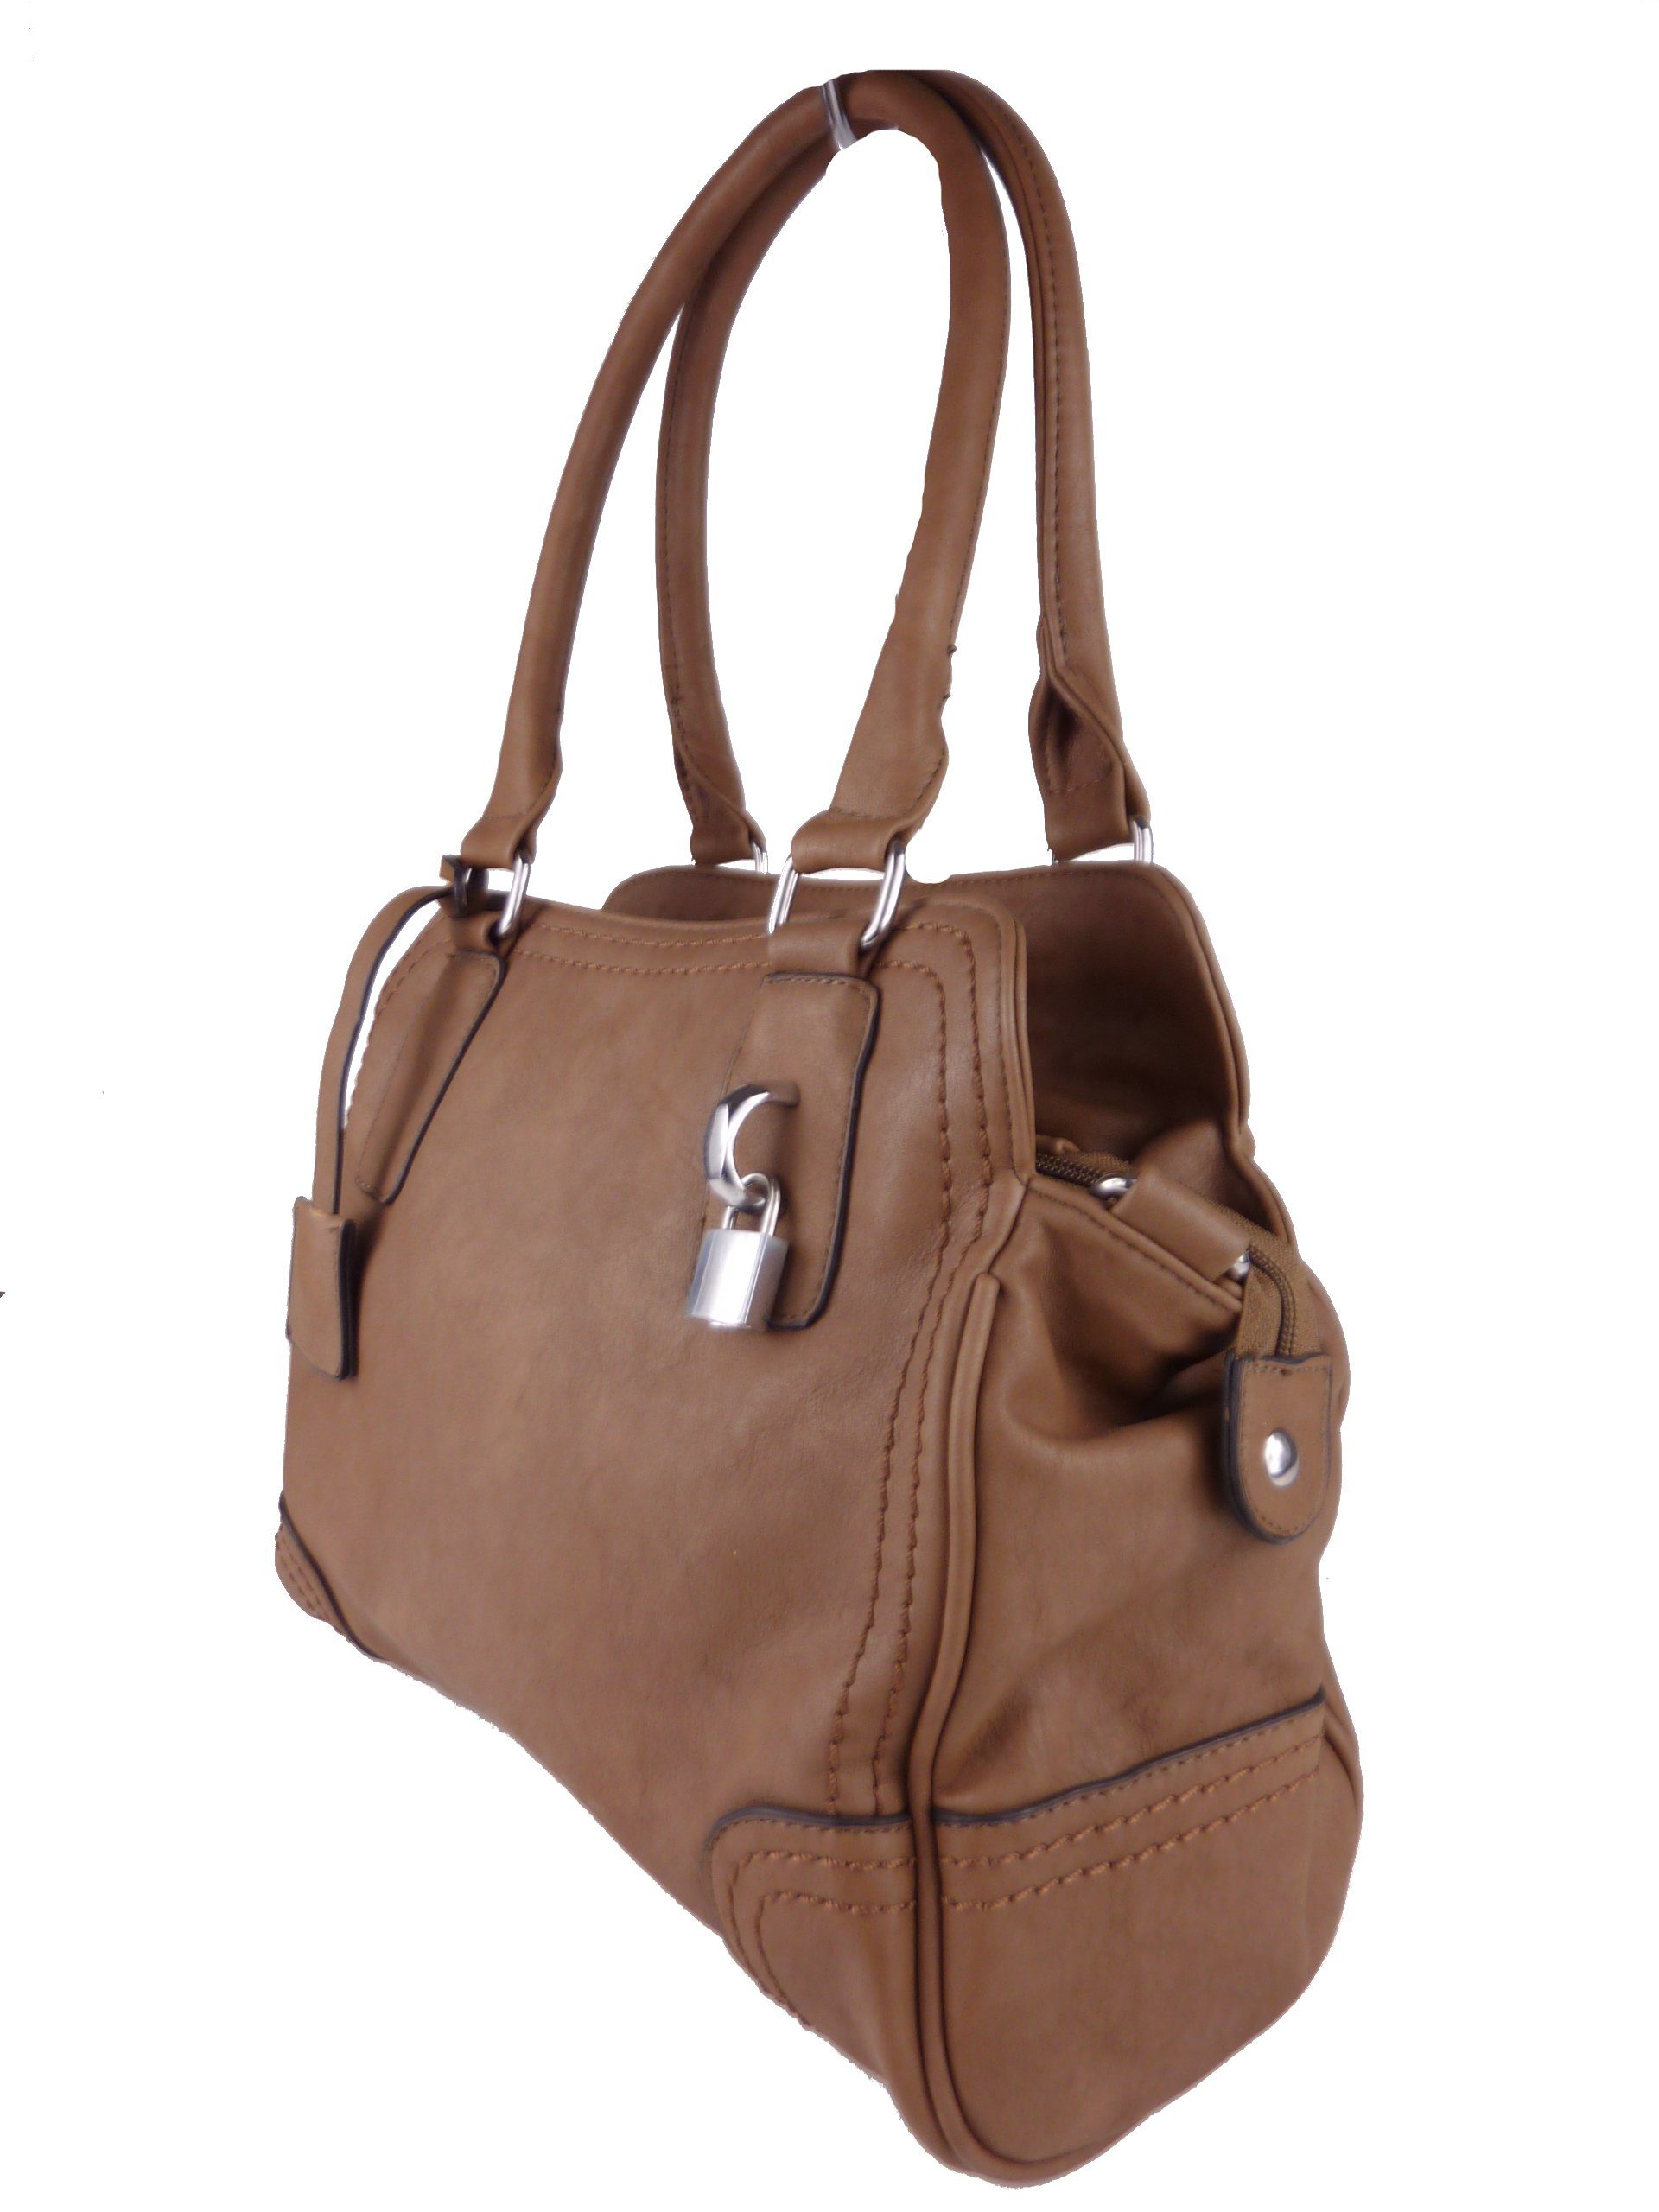 Taschen4life Handtasche klassische Handtasche C1125, elegante Schultertasche, tote bag, satchel hobo khaki